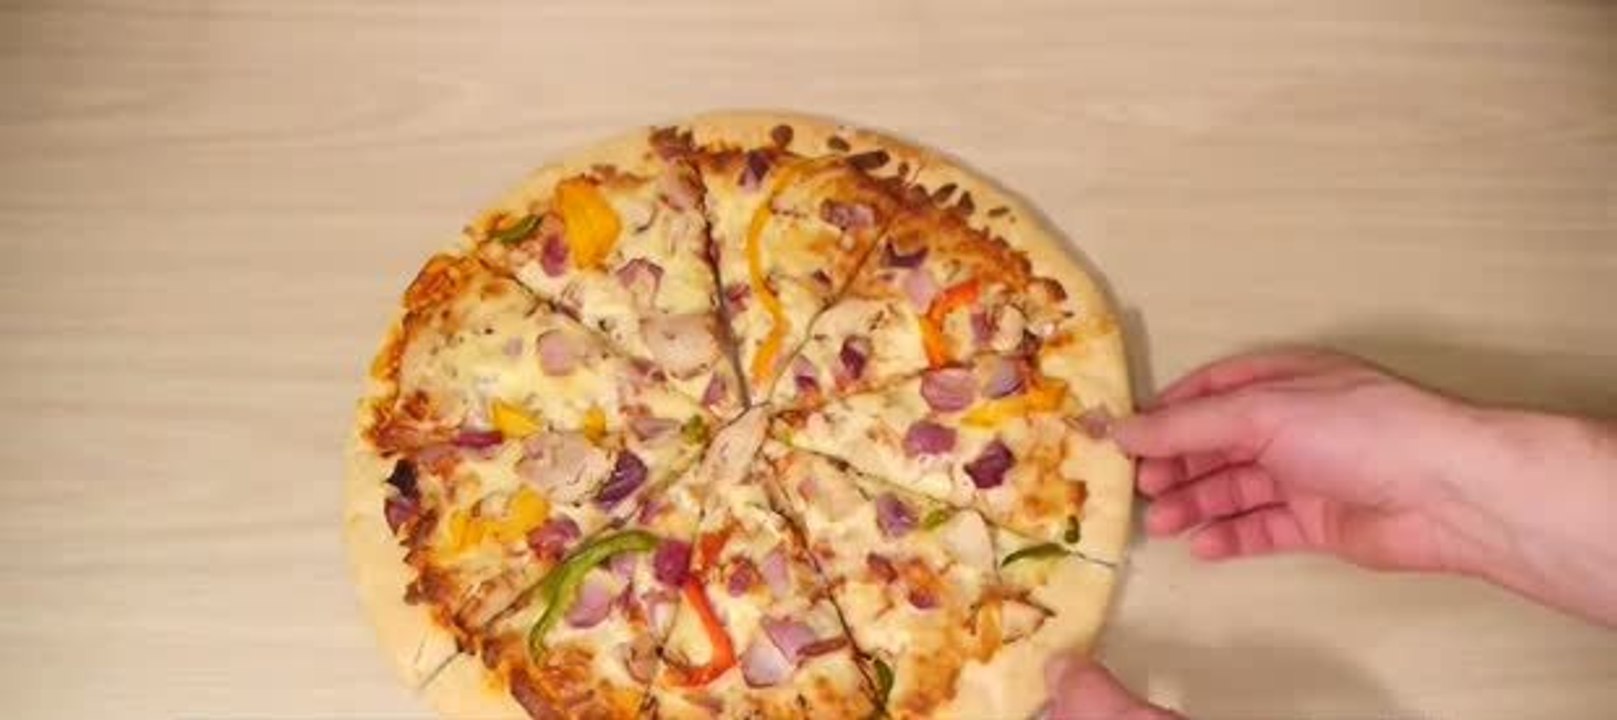 Mit diesem GENIALEN Trick hast du IMMER das größte Stück Pizza!